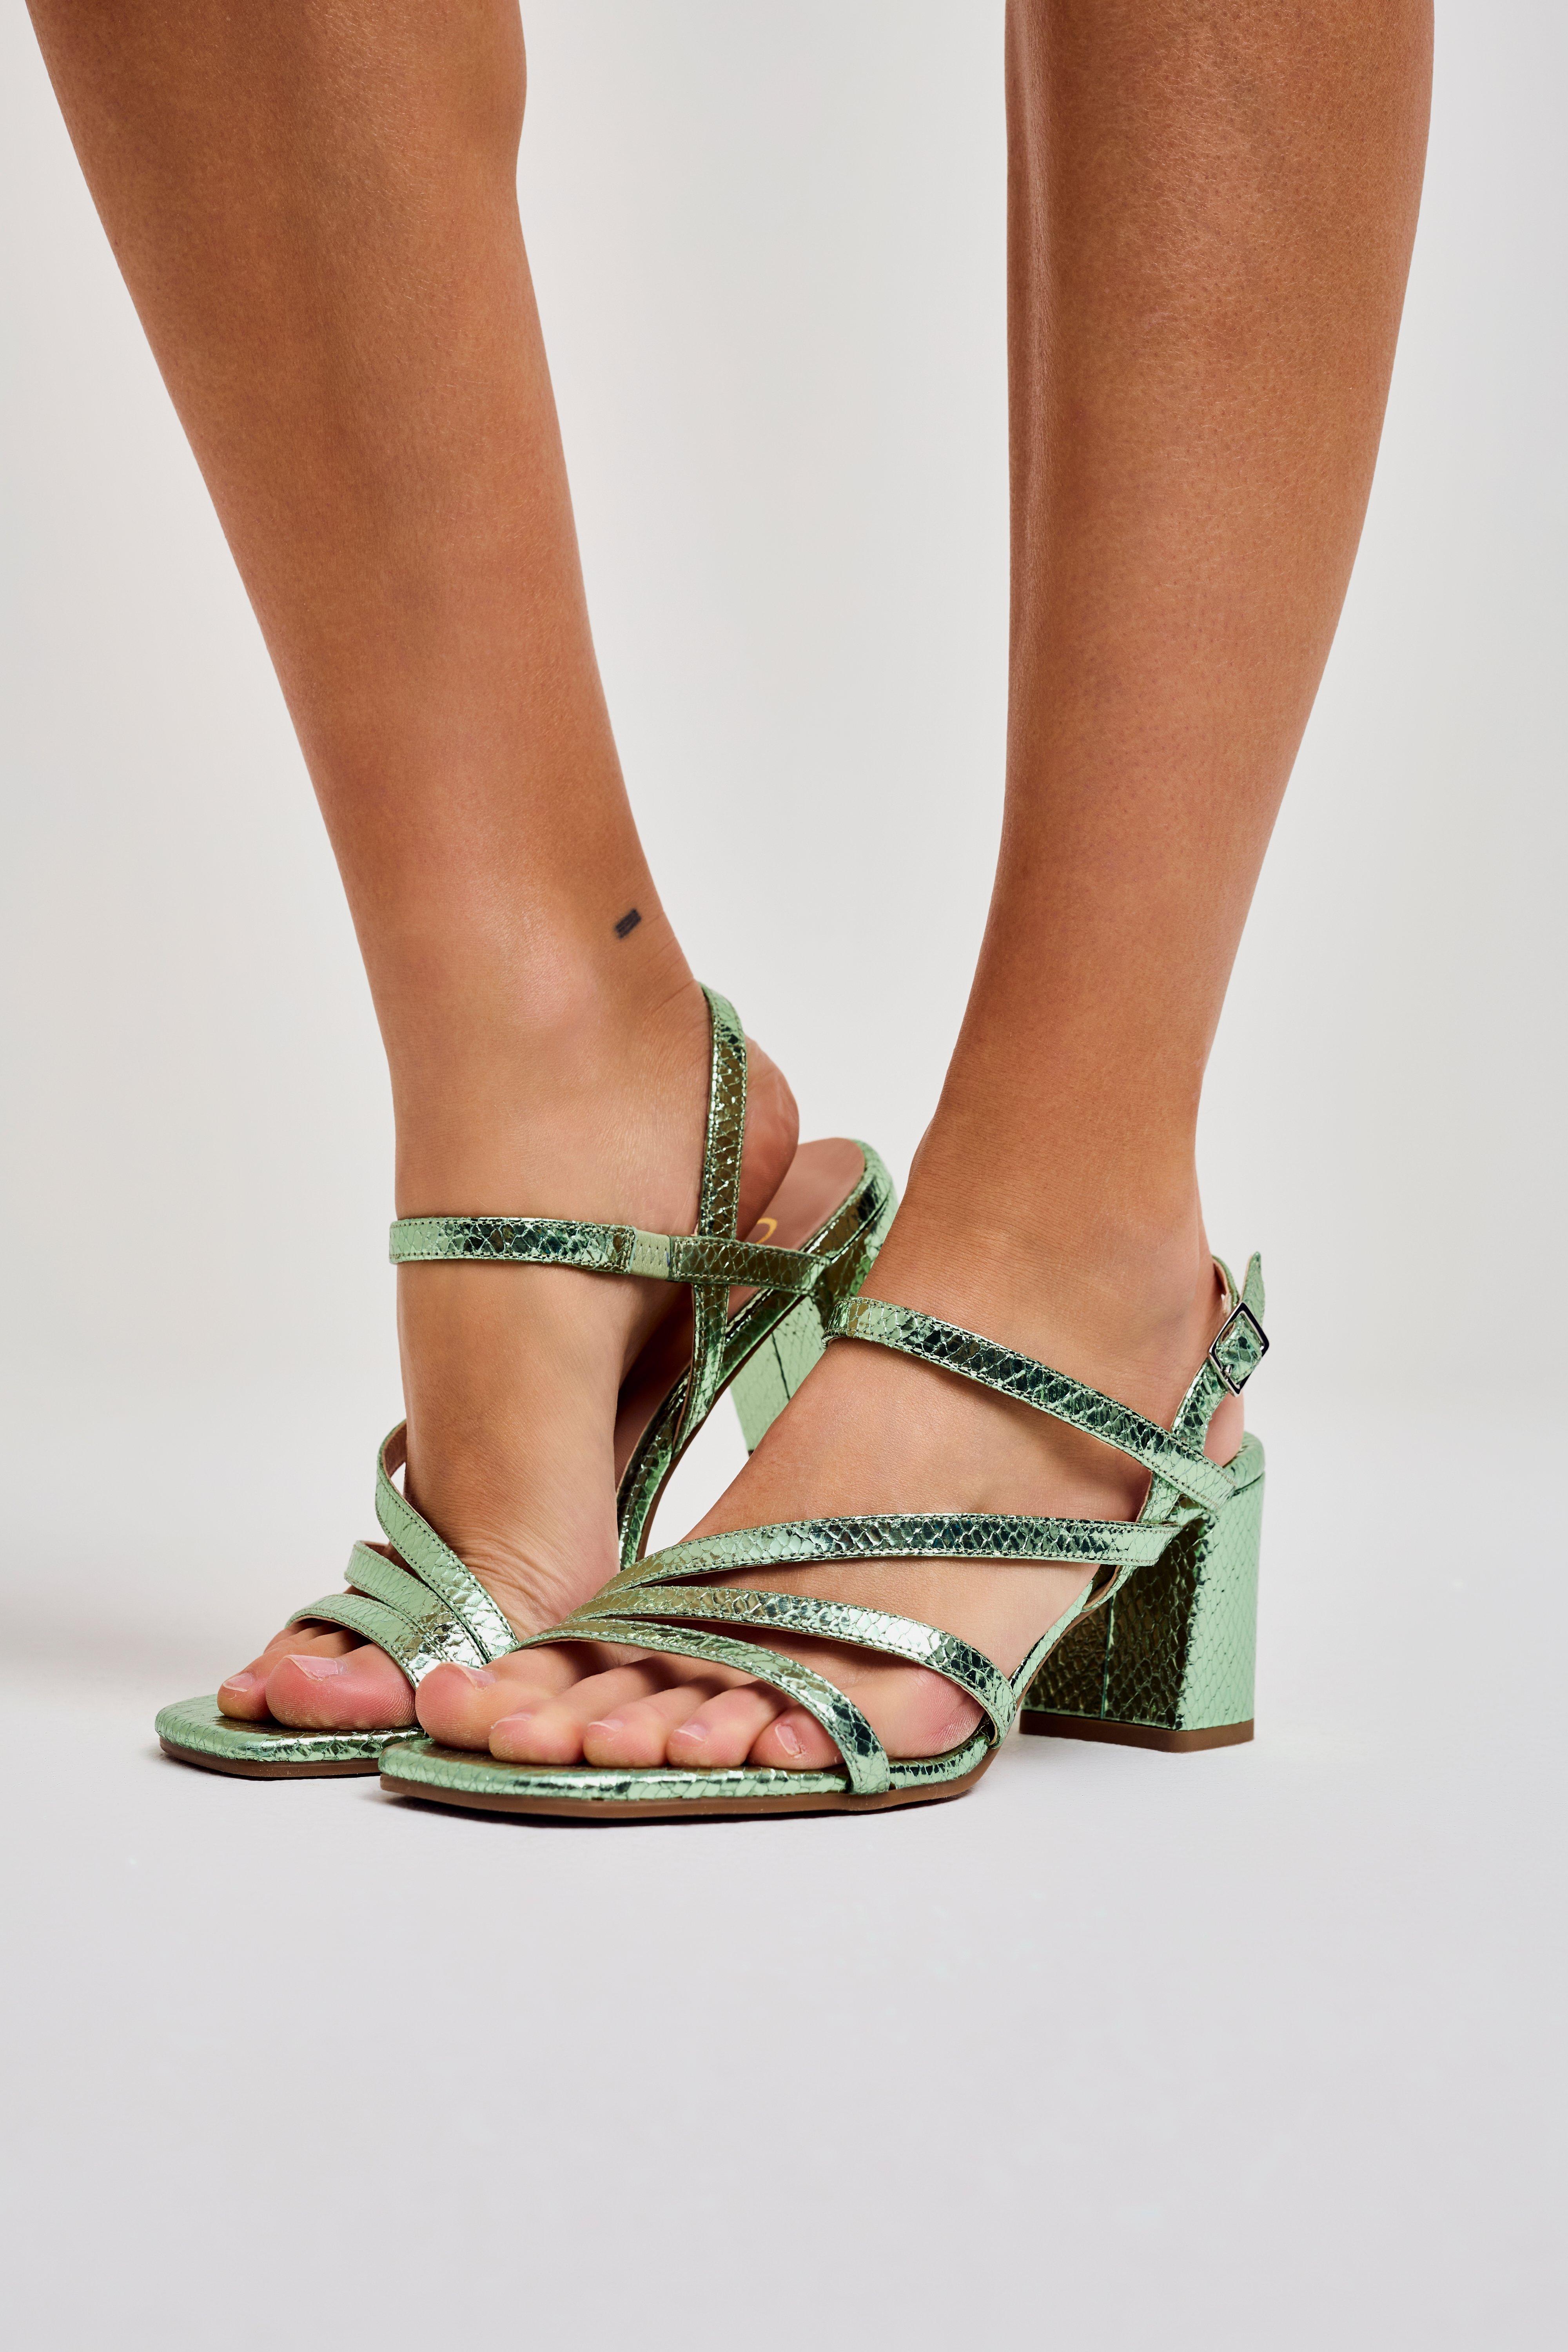 CKS Dames - SARAH B - sandals - light green